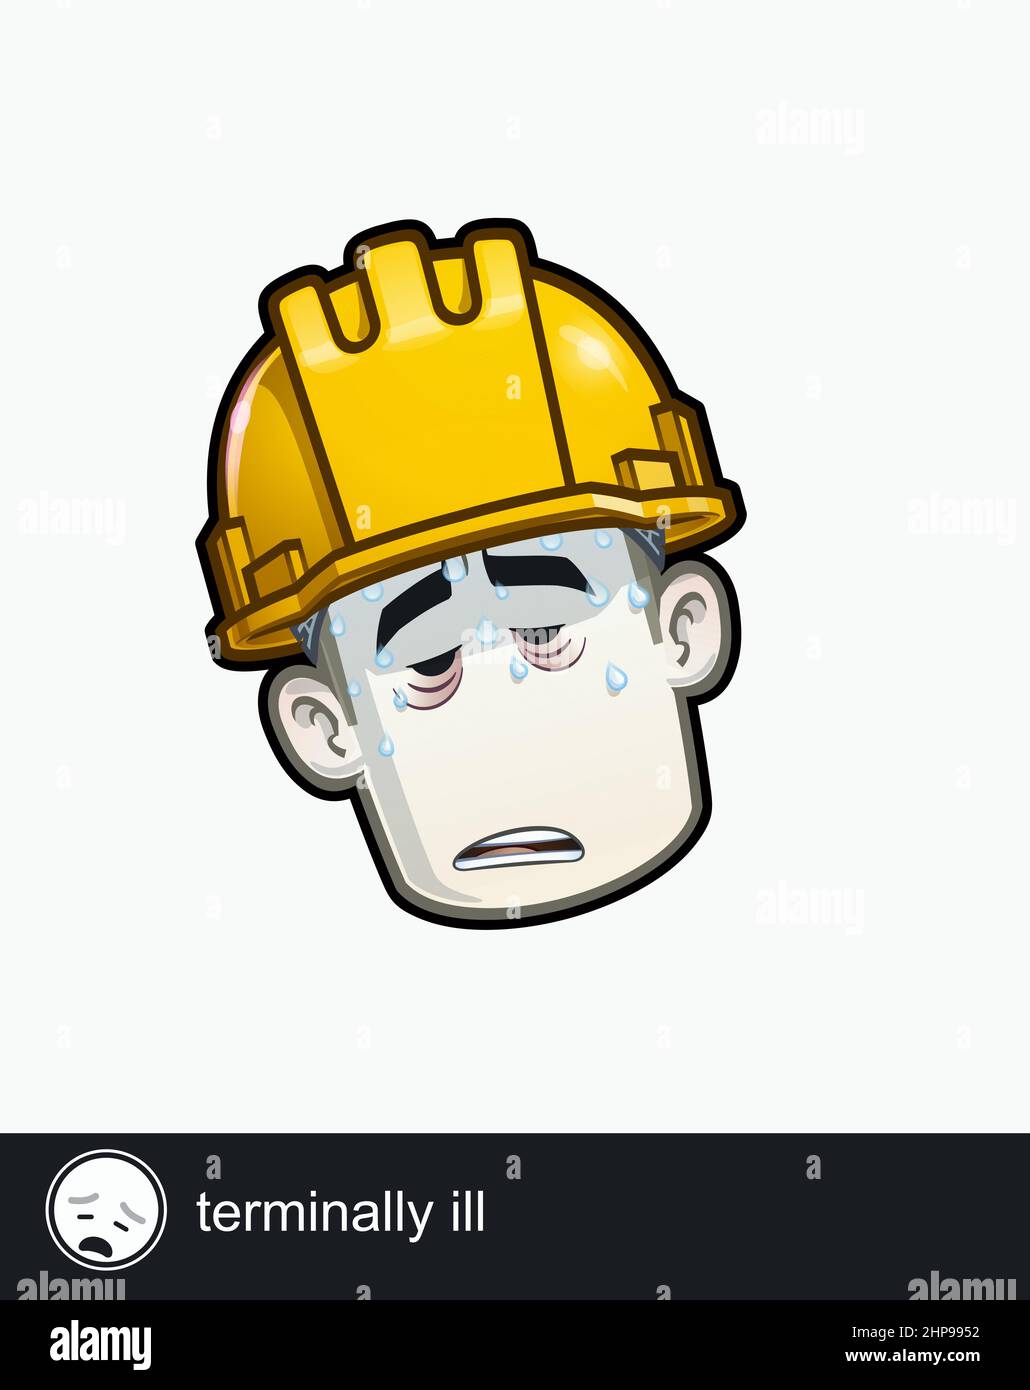 Ikone eines Bauarbeiters Gesicht mit unheilbar kranken emotionalen Ausdruck. Alle Elemente übersichtlich auf gut beschriebenen Ebenen und Gruppen. Stock Vektor